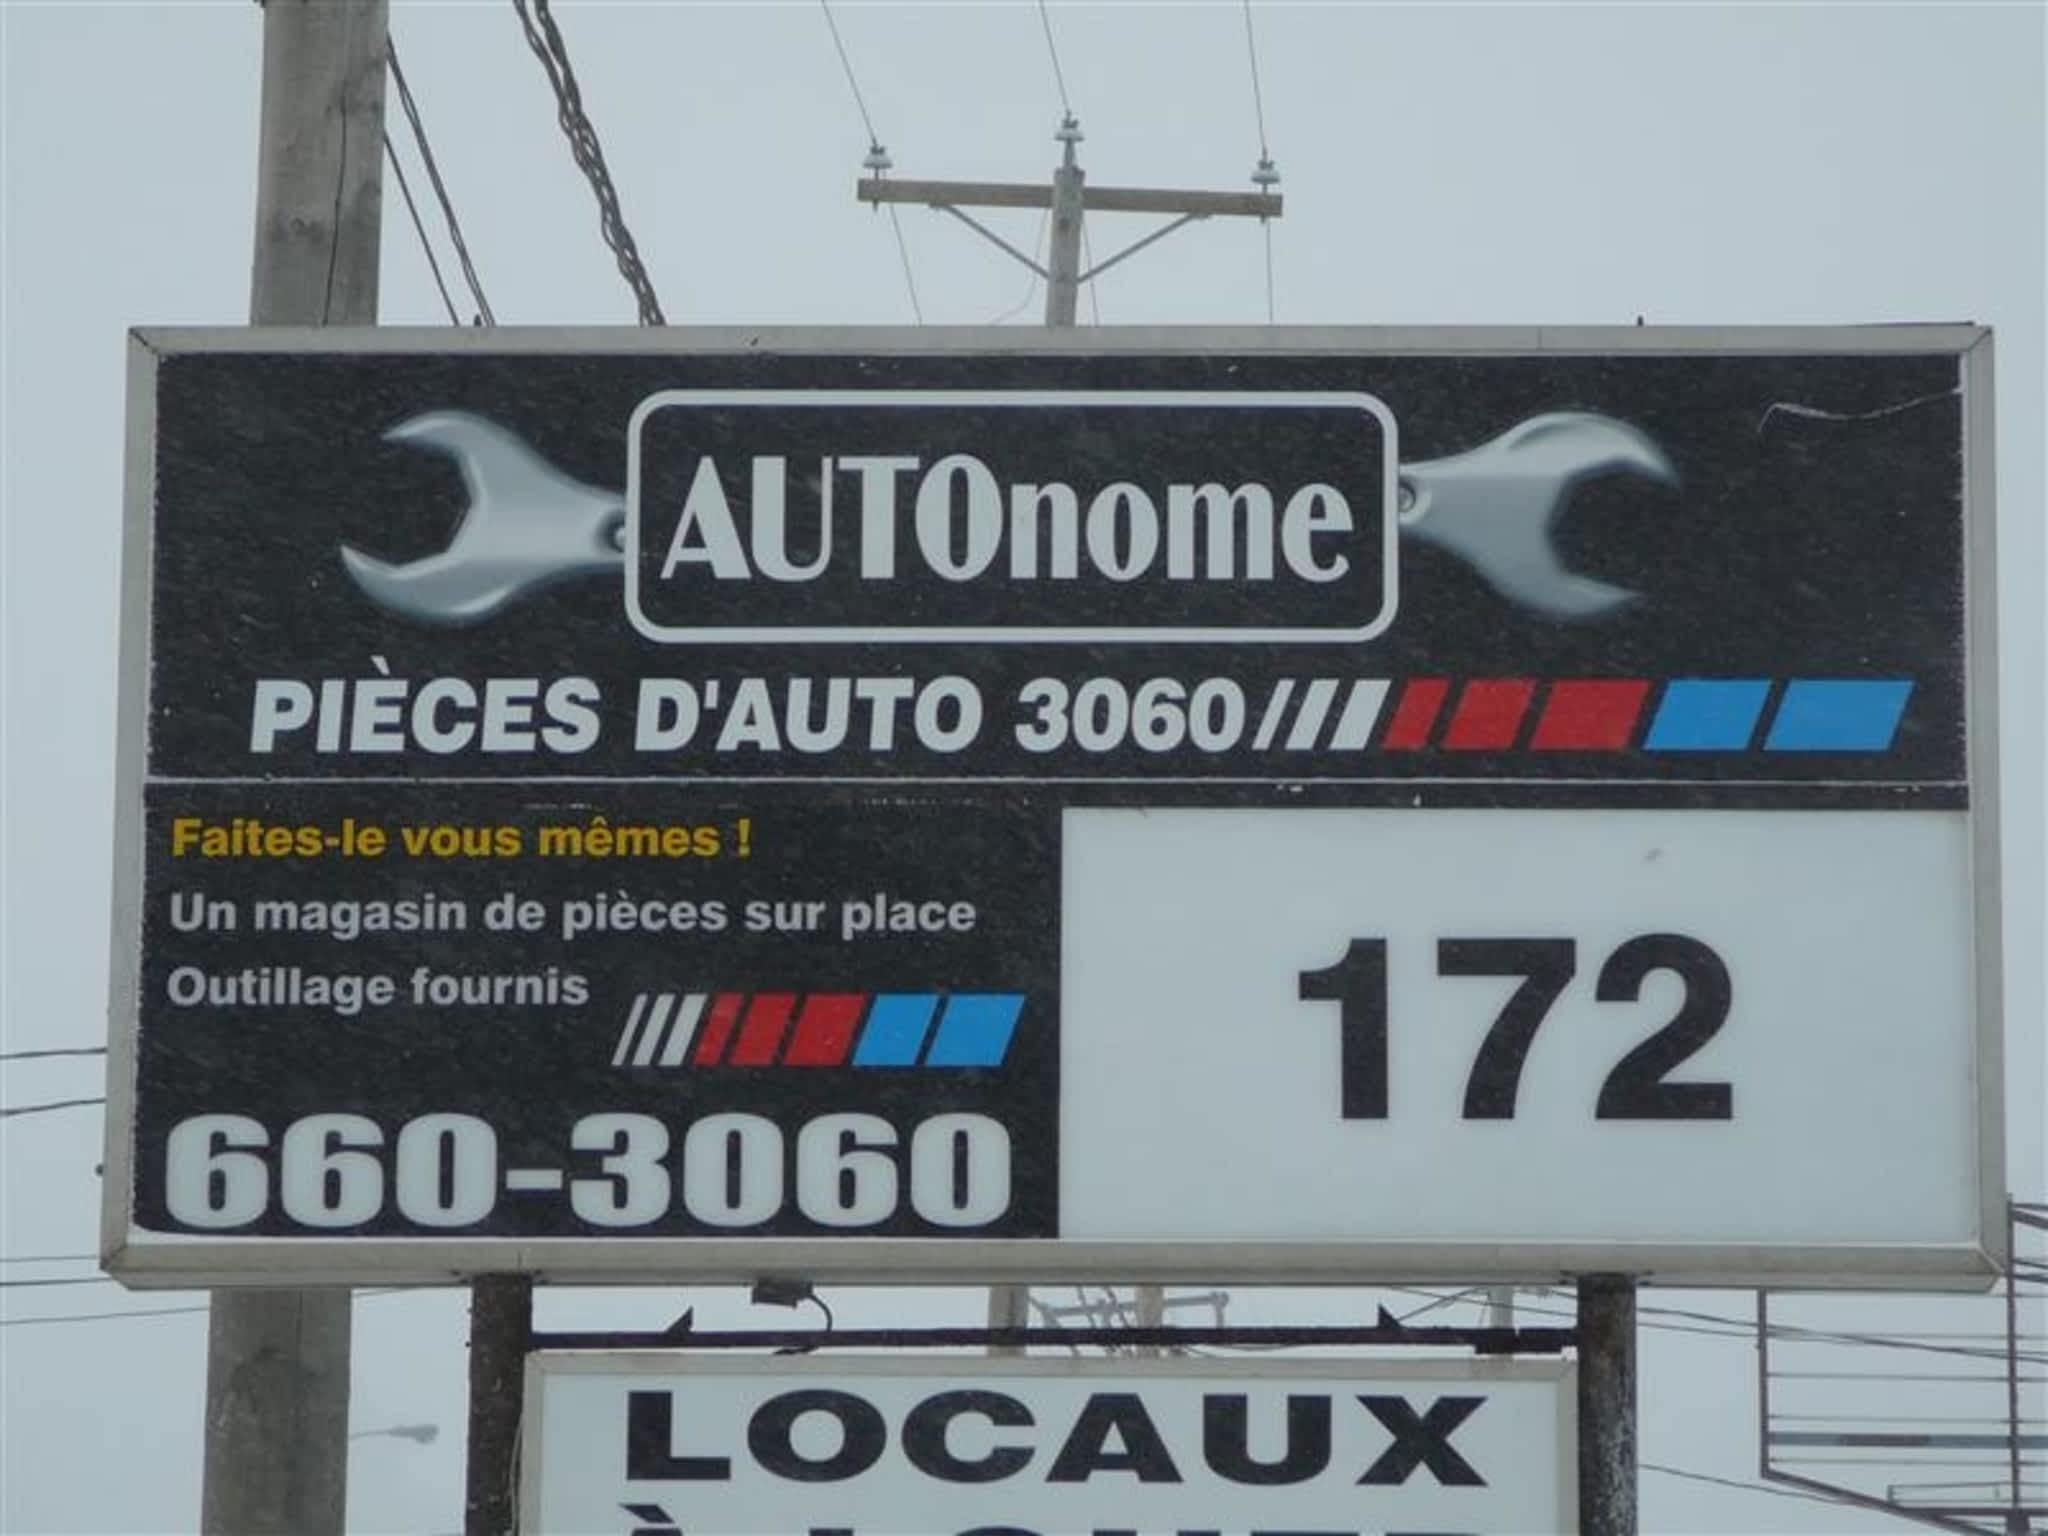 photo Autonome Pieces D'Autos 3060 Inc